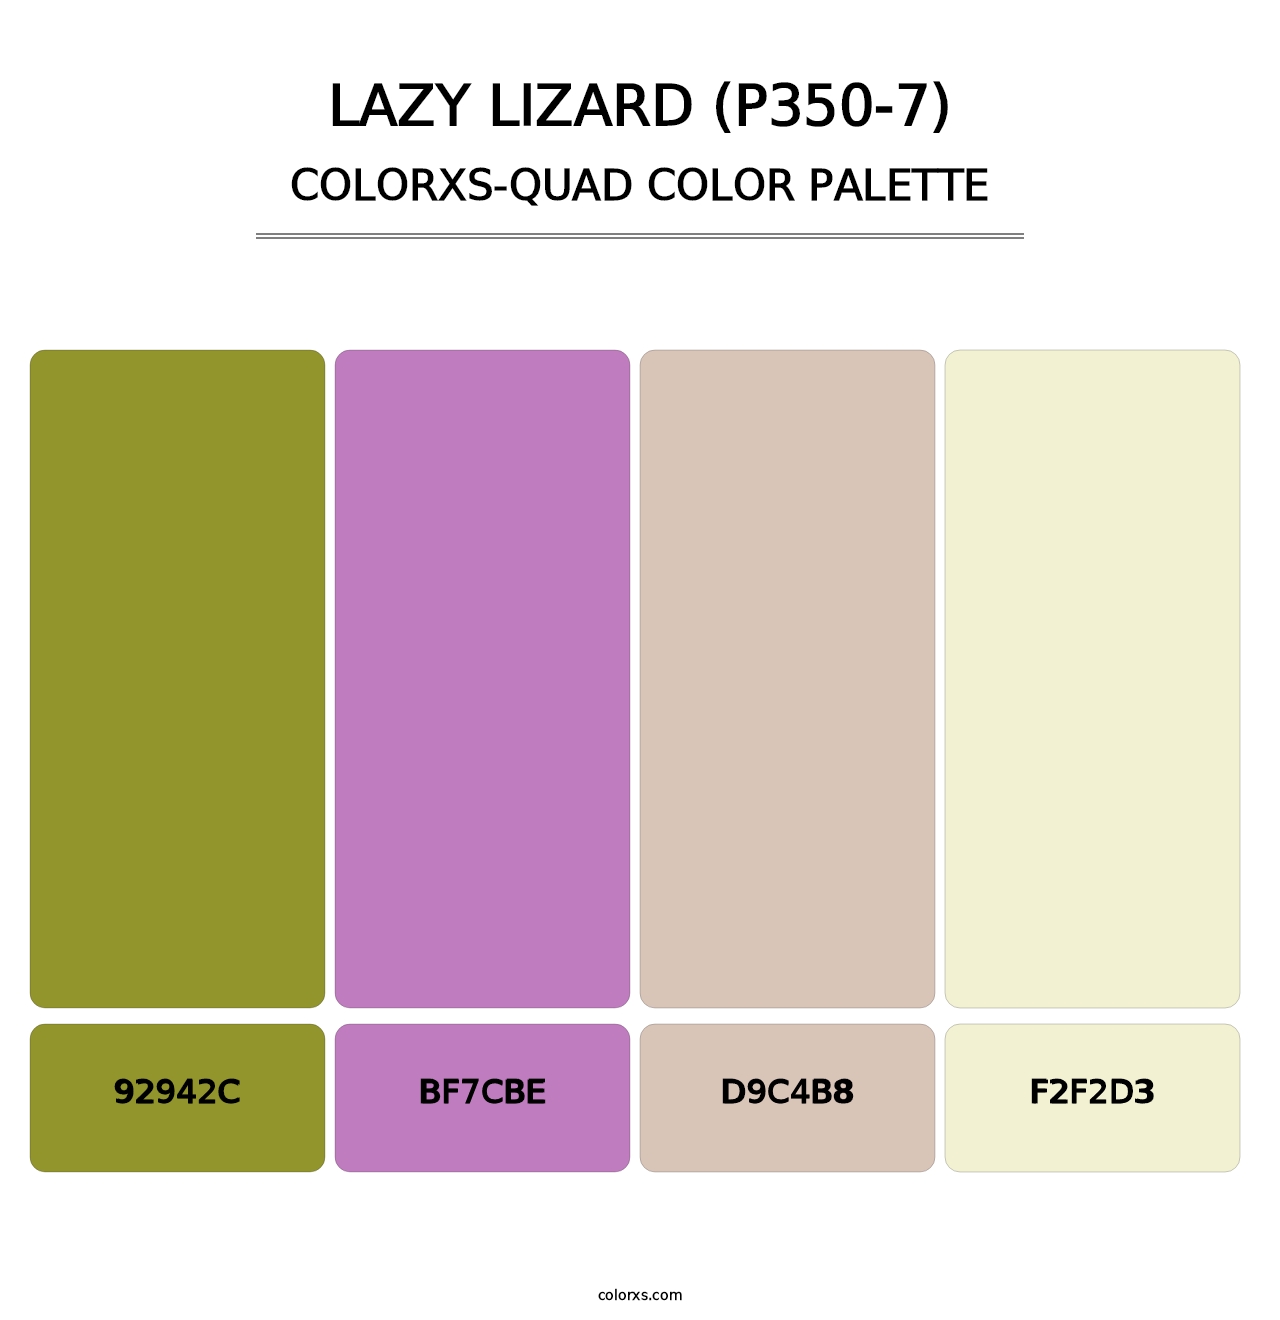 Lazy Lizard (P350-7) - Colorxs Quad Palette